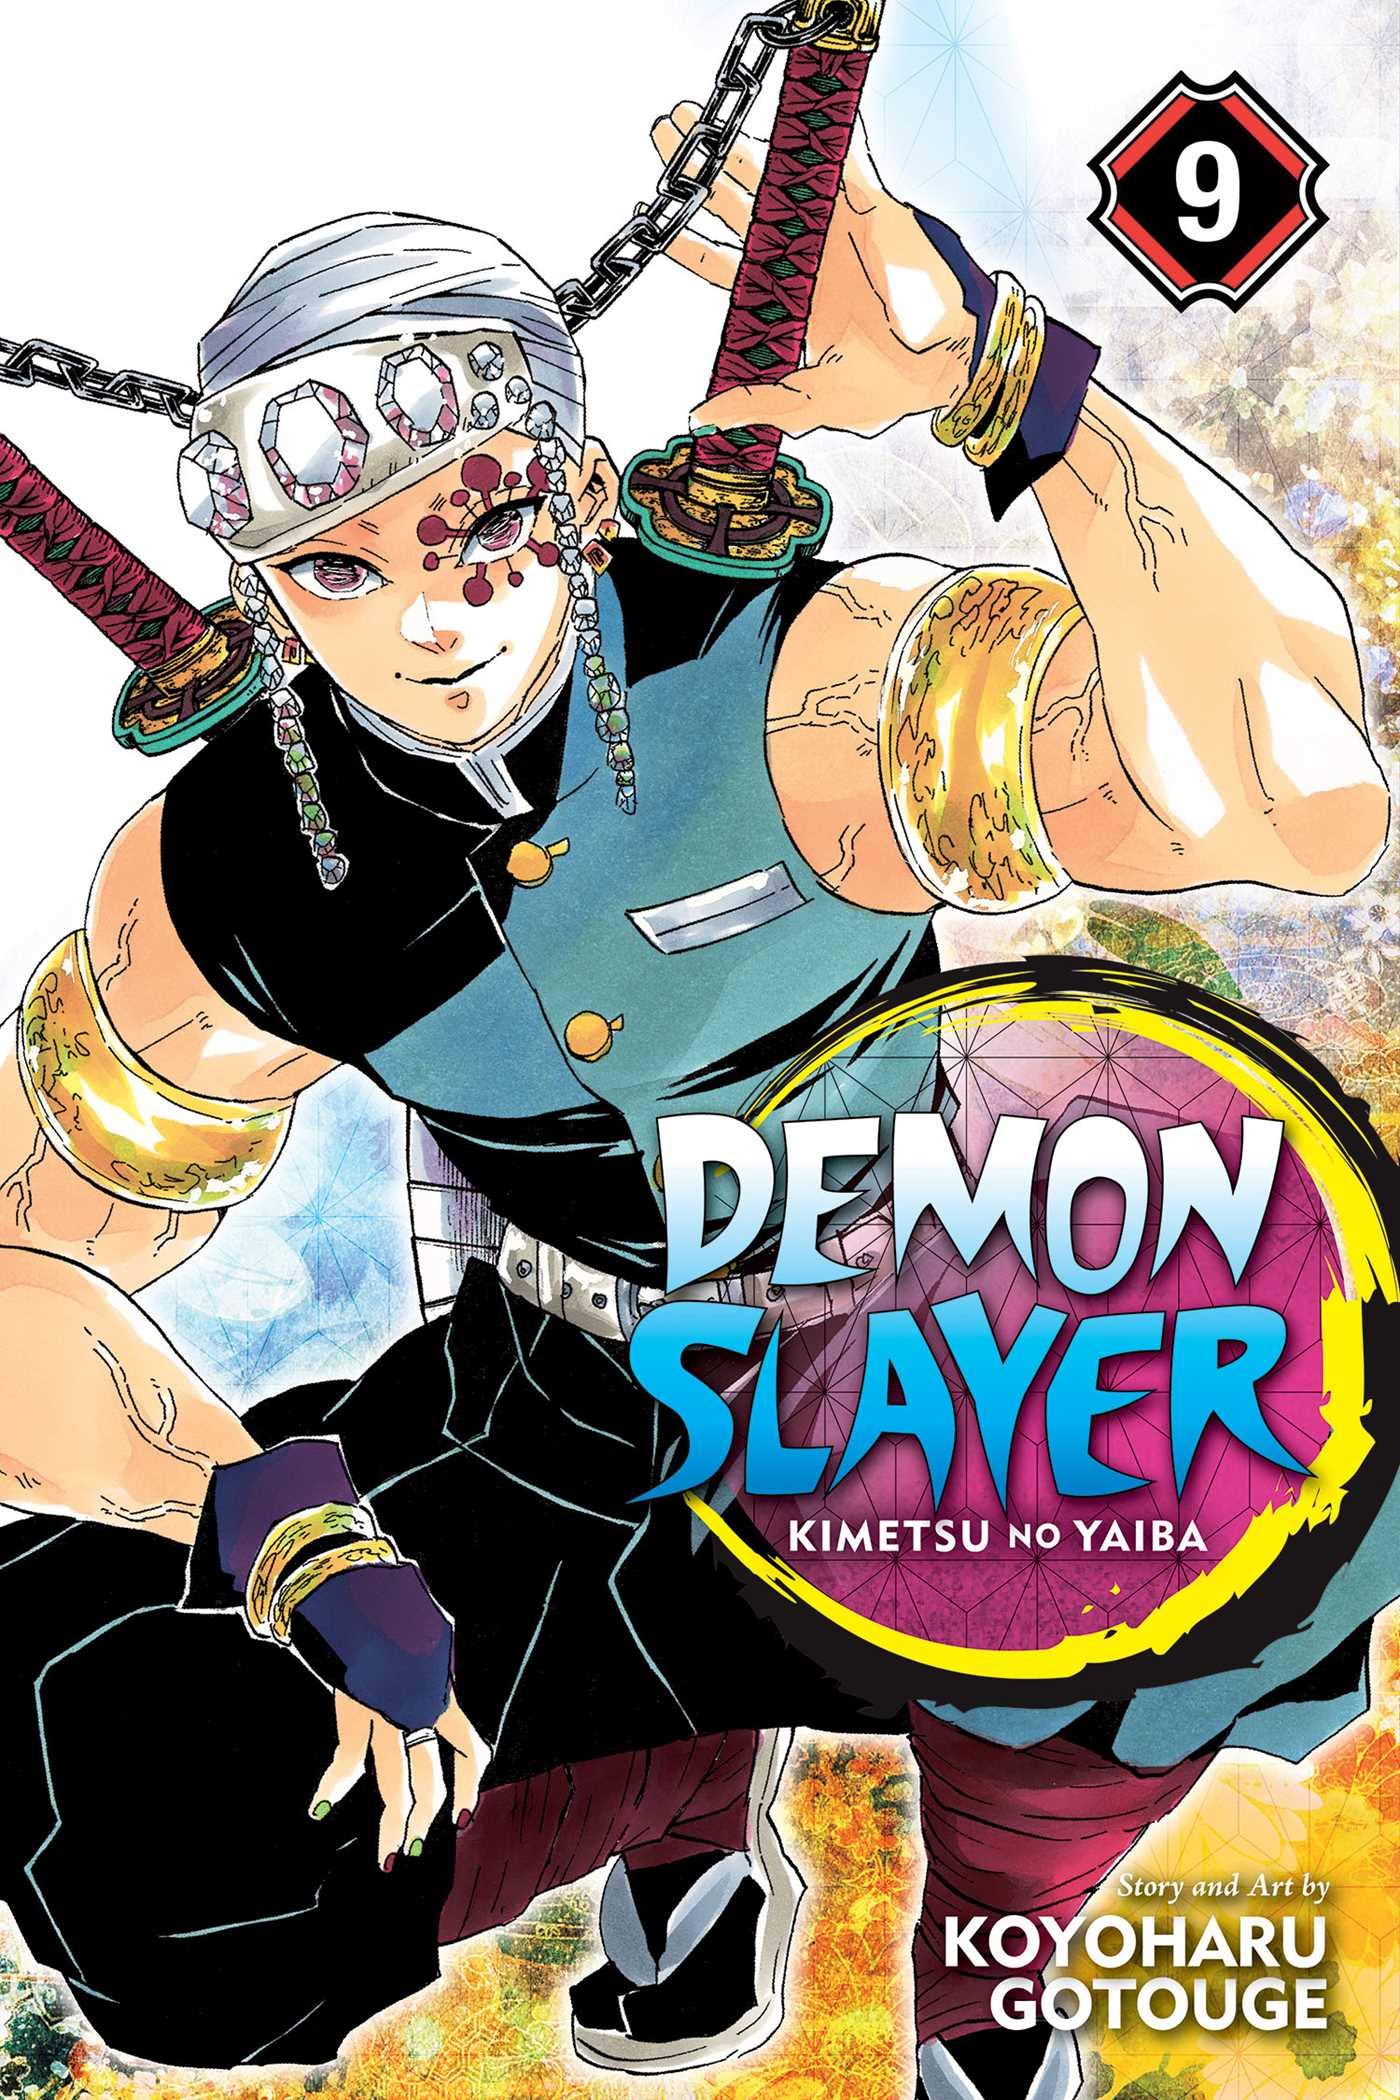 Demon Slayer: Kimetsu no Yaiba - Volume 9 | Koyoharu Gotouge